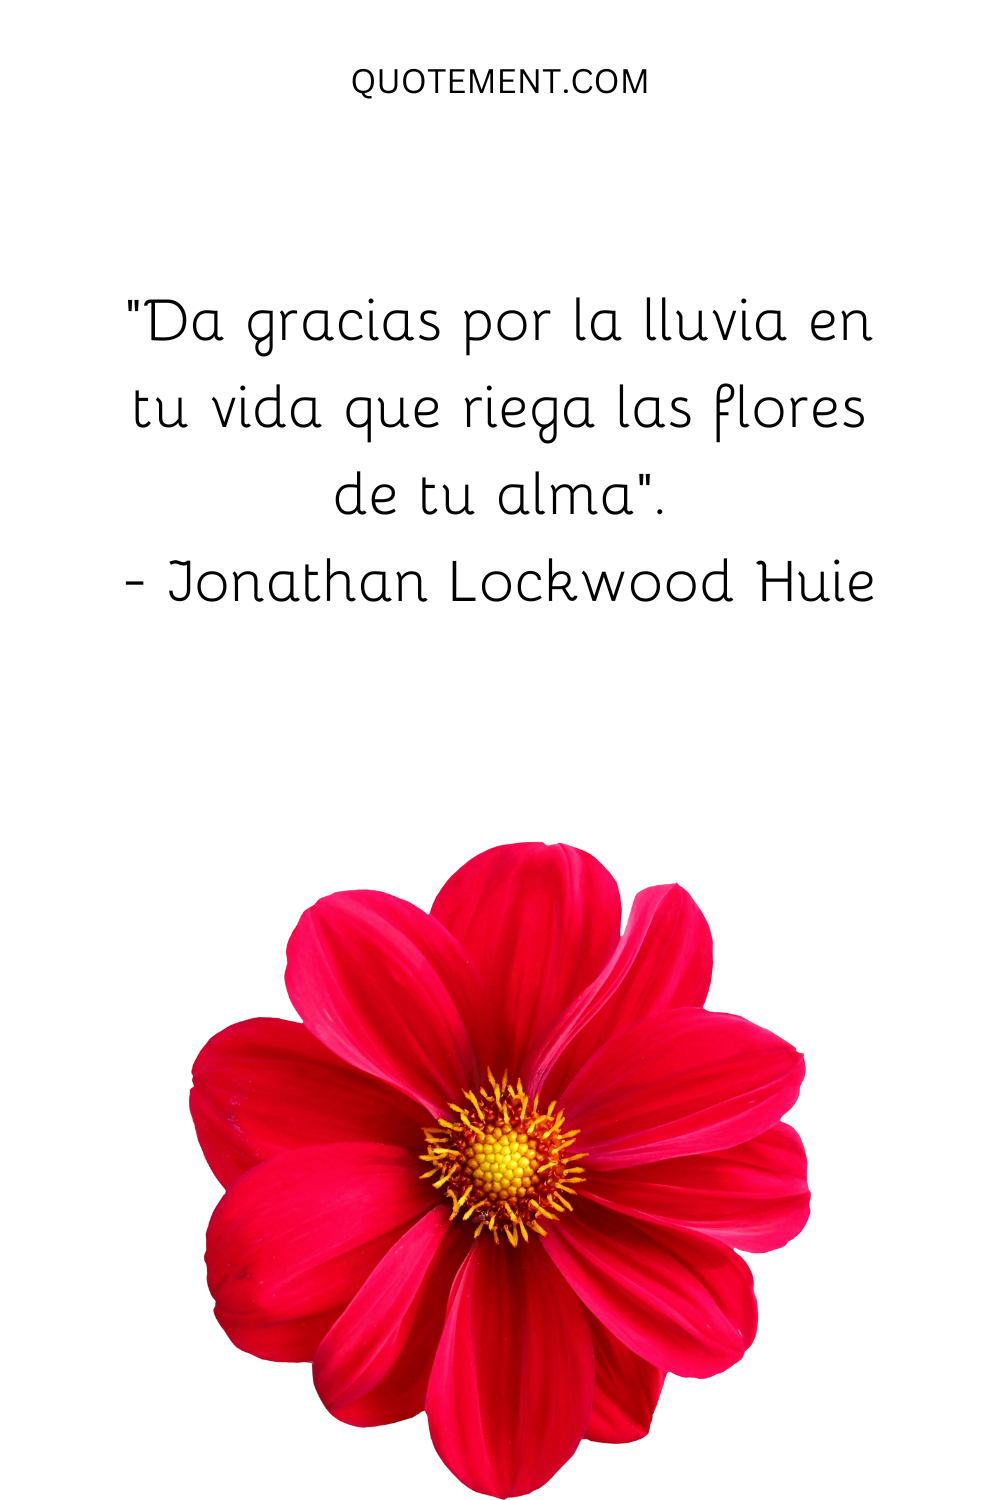 "Da gracias por la lluvia en tu vida que riega las flores de tu alma". - Jonathan Lockwood Huie